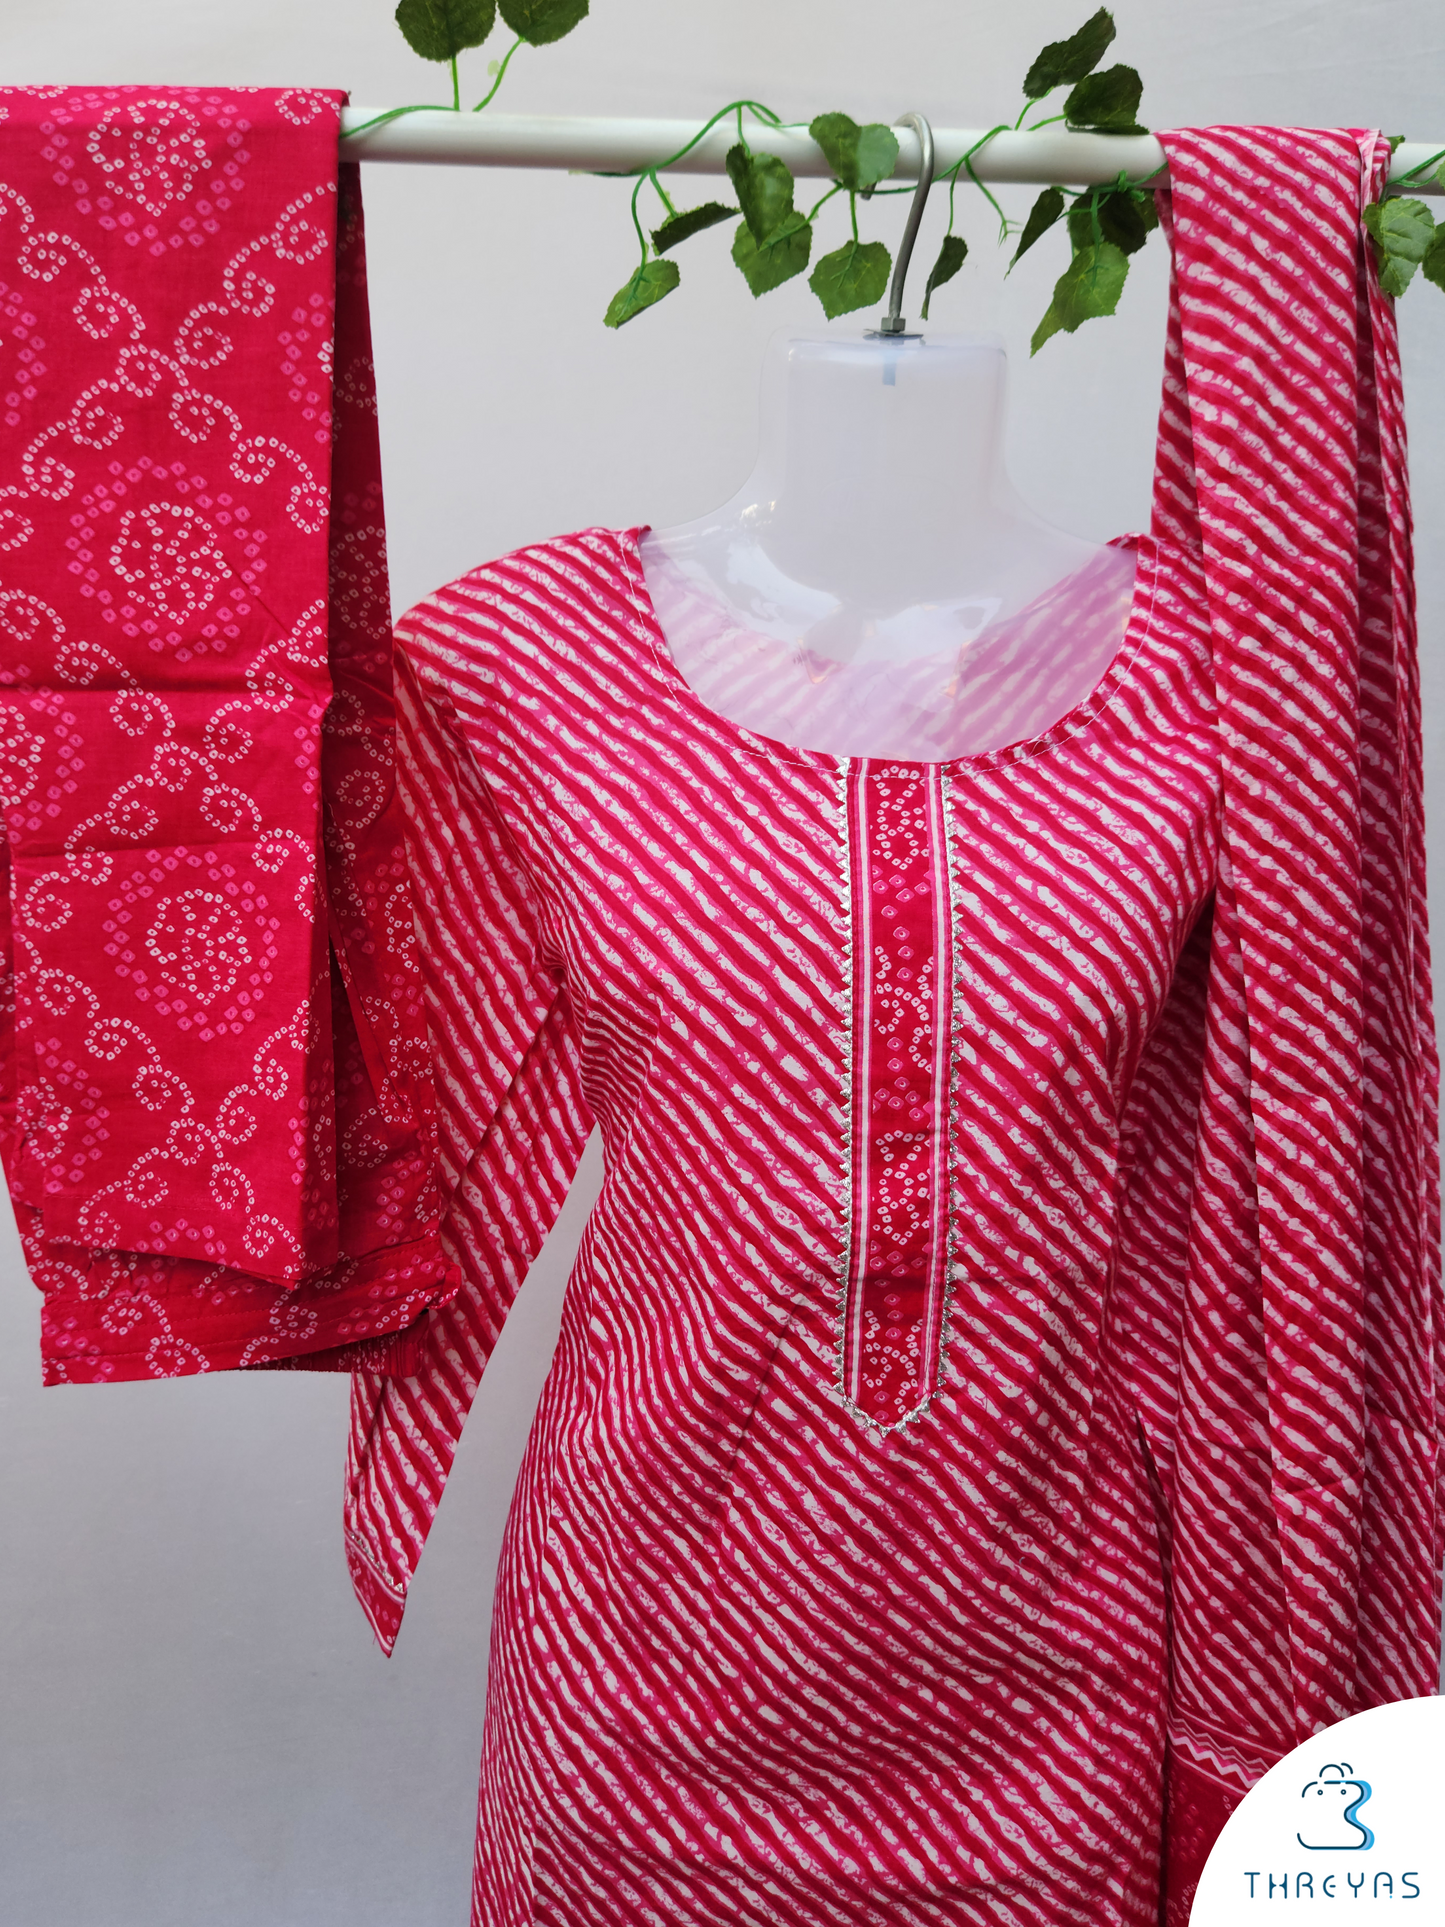 Pink Cotton kurthis Set for women